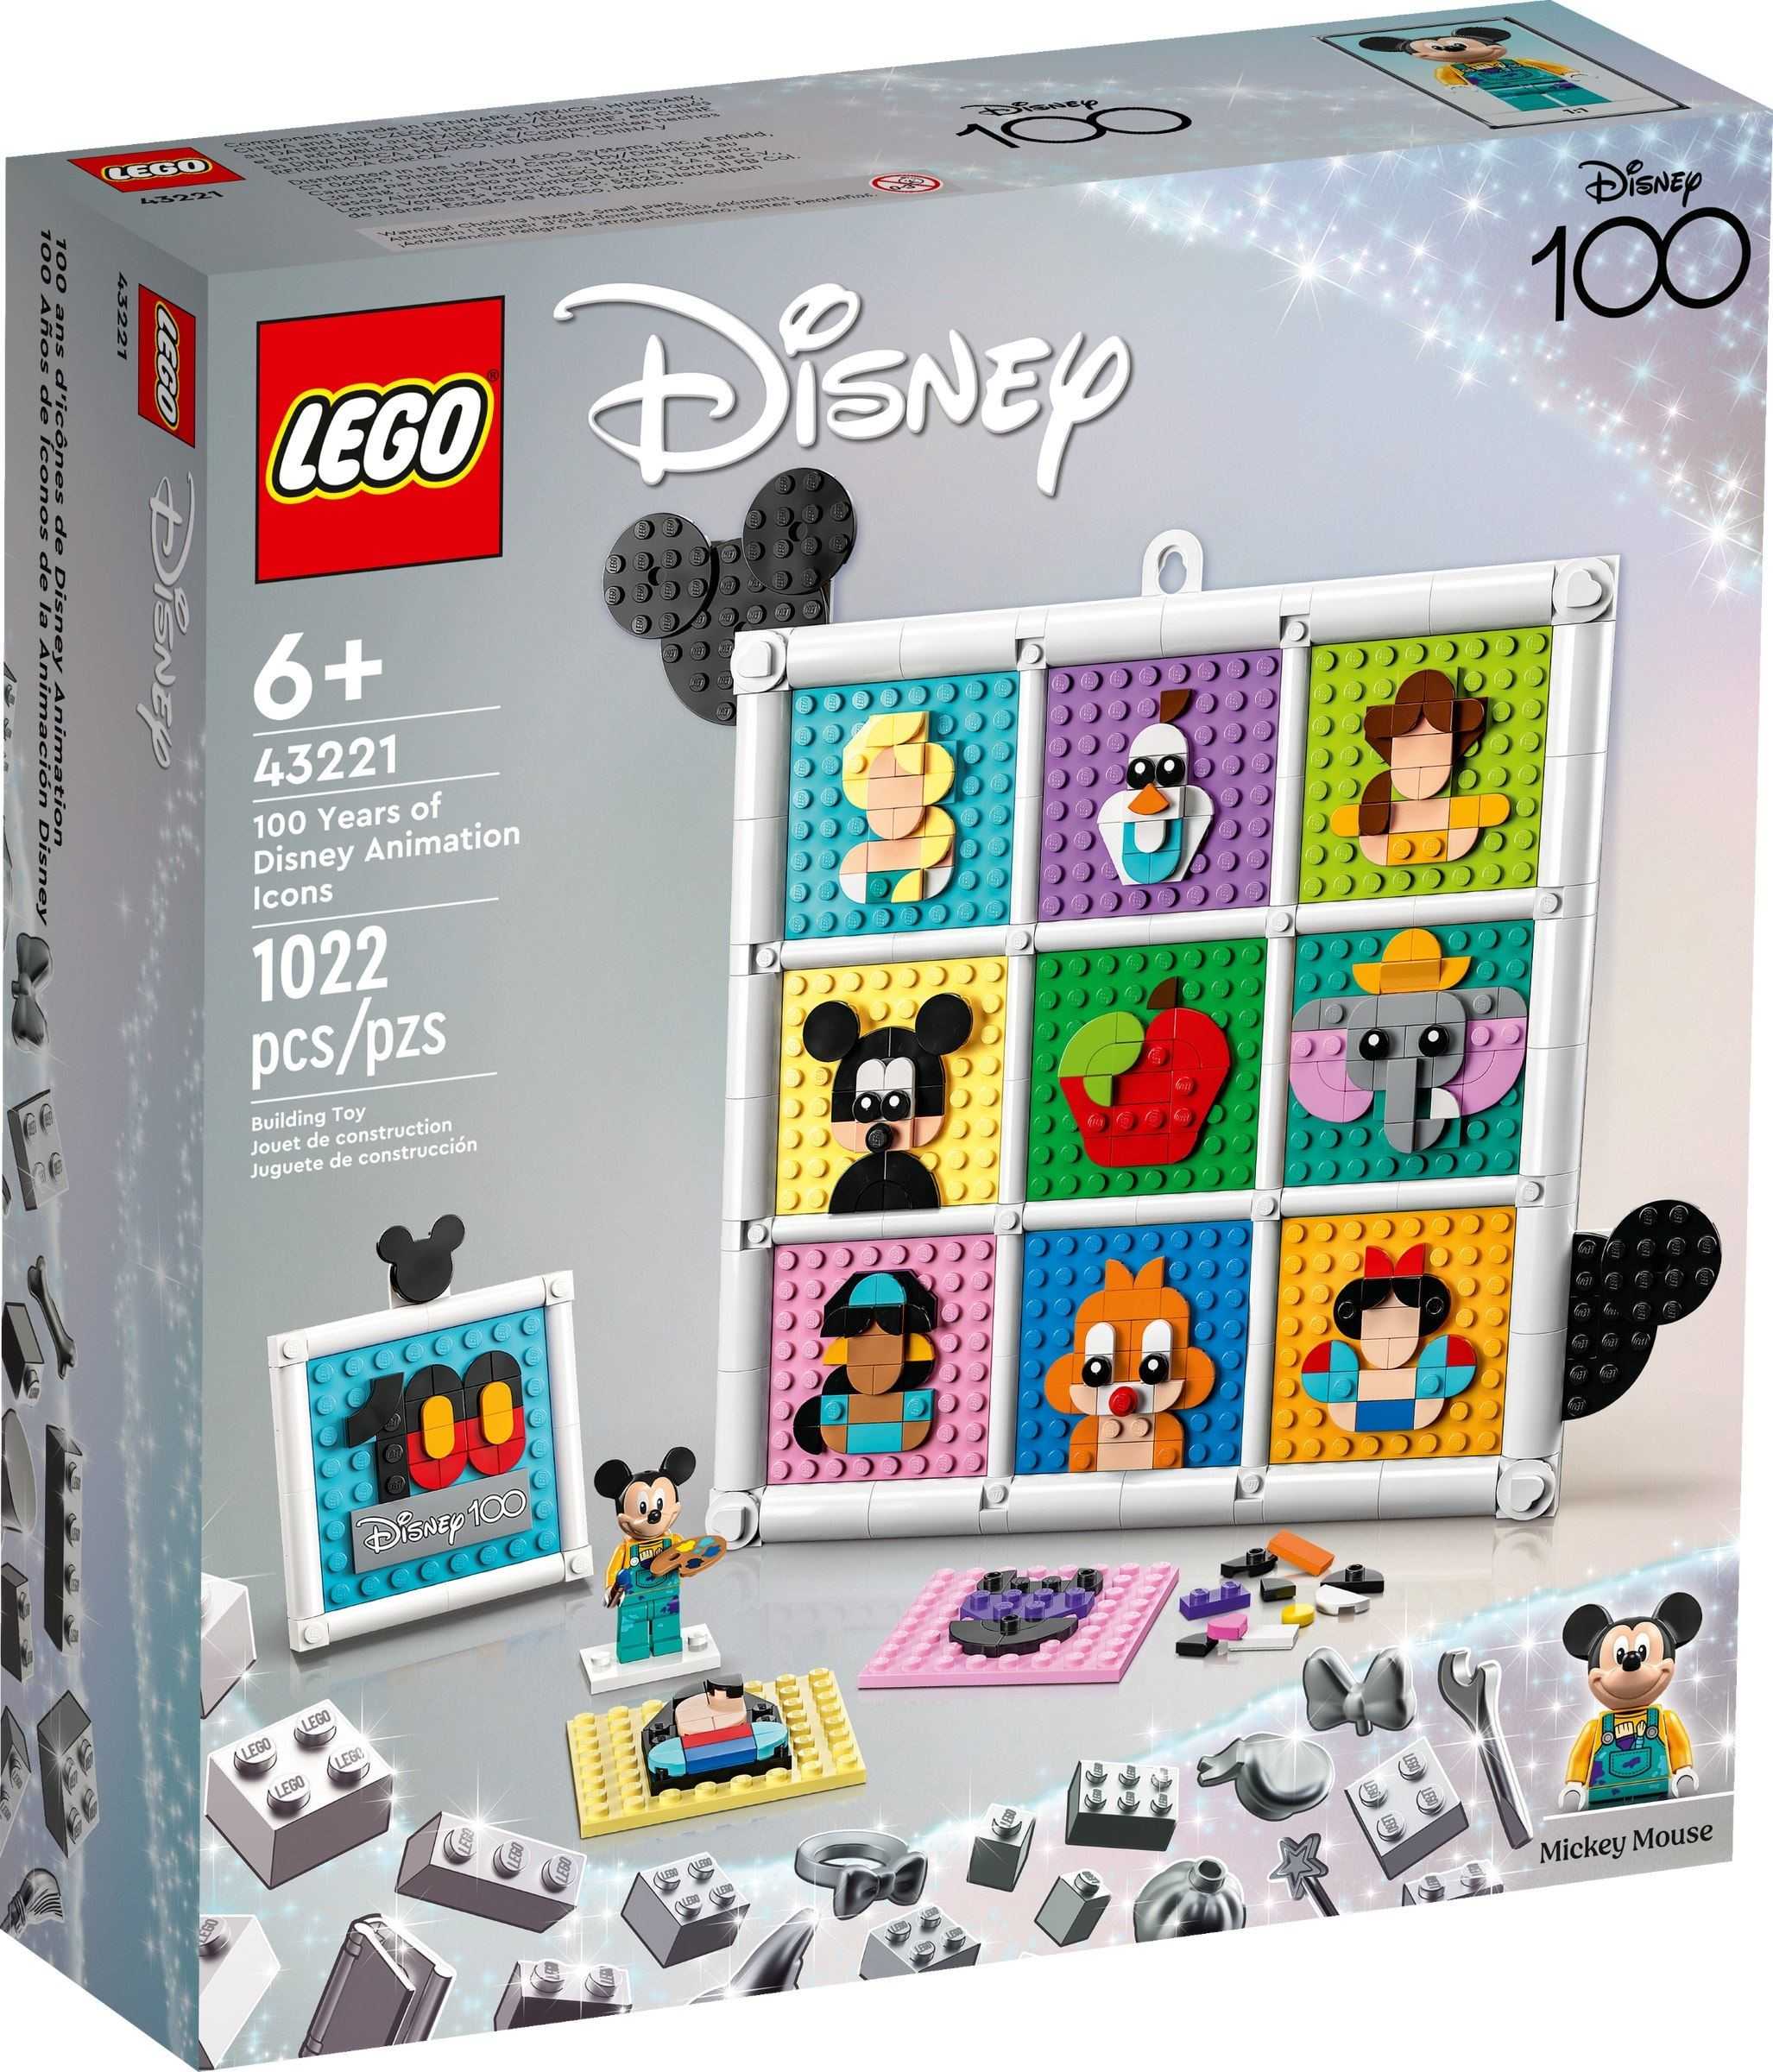 【電積系@北投】LEGO 43221 百年迪士尼動畫經典角色(3)-Disney